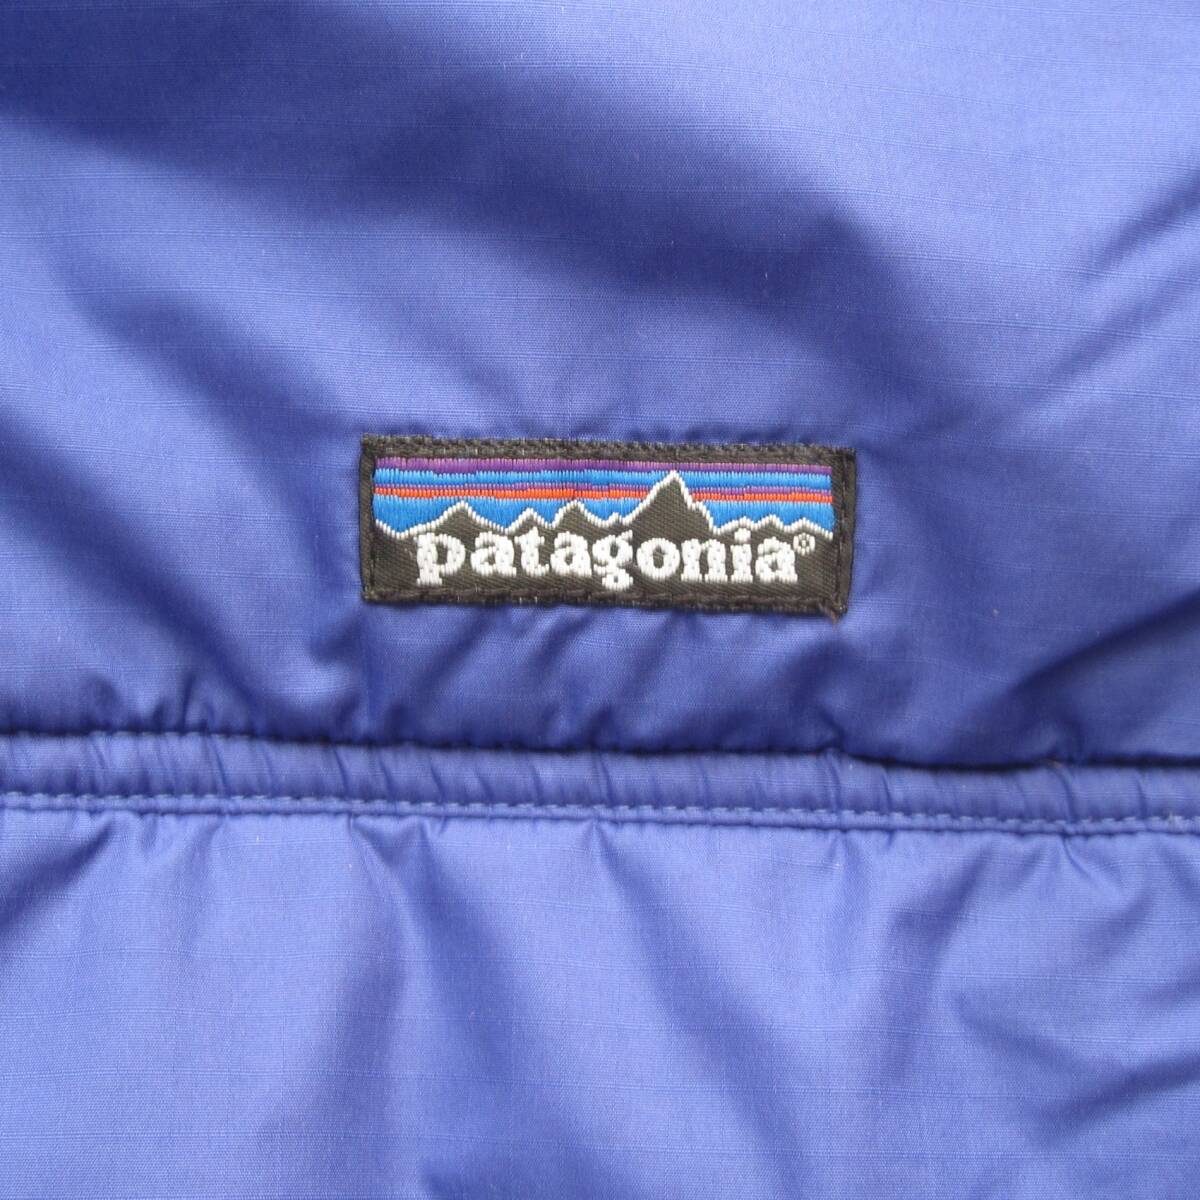 ☆'99 パタゴニア ファイヤーボールジャケット (XL) コバルト USA製 / patagonia / R4 / パフボール / mars / グリセード / パイル ベストの画像4